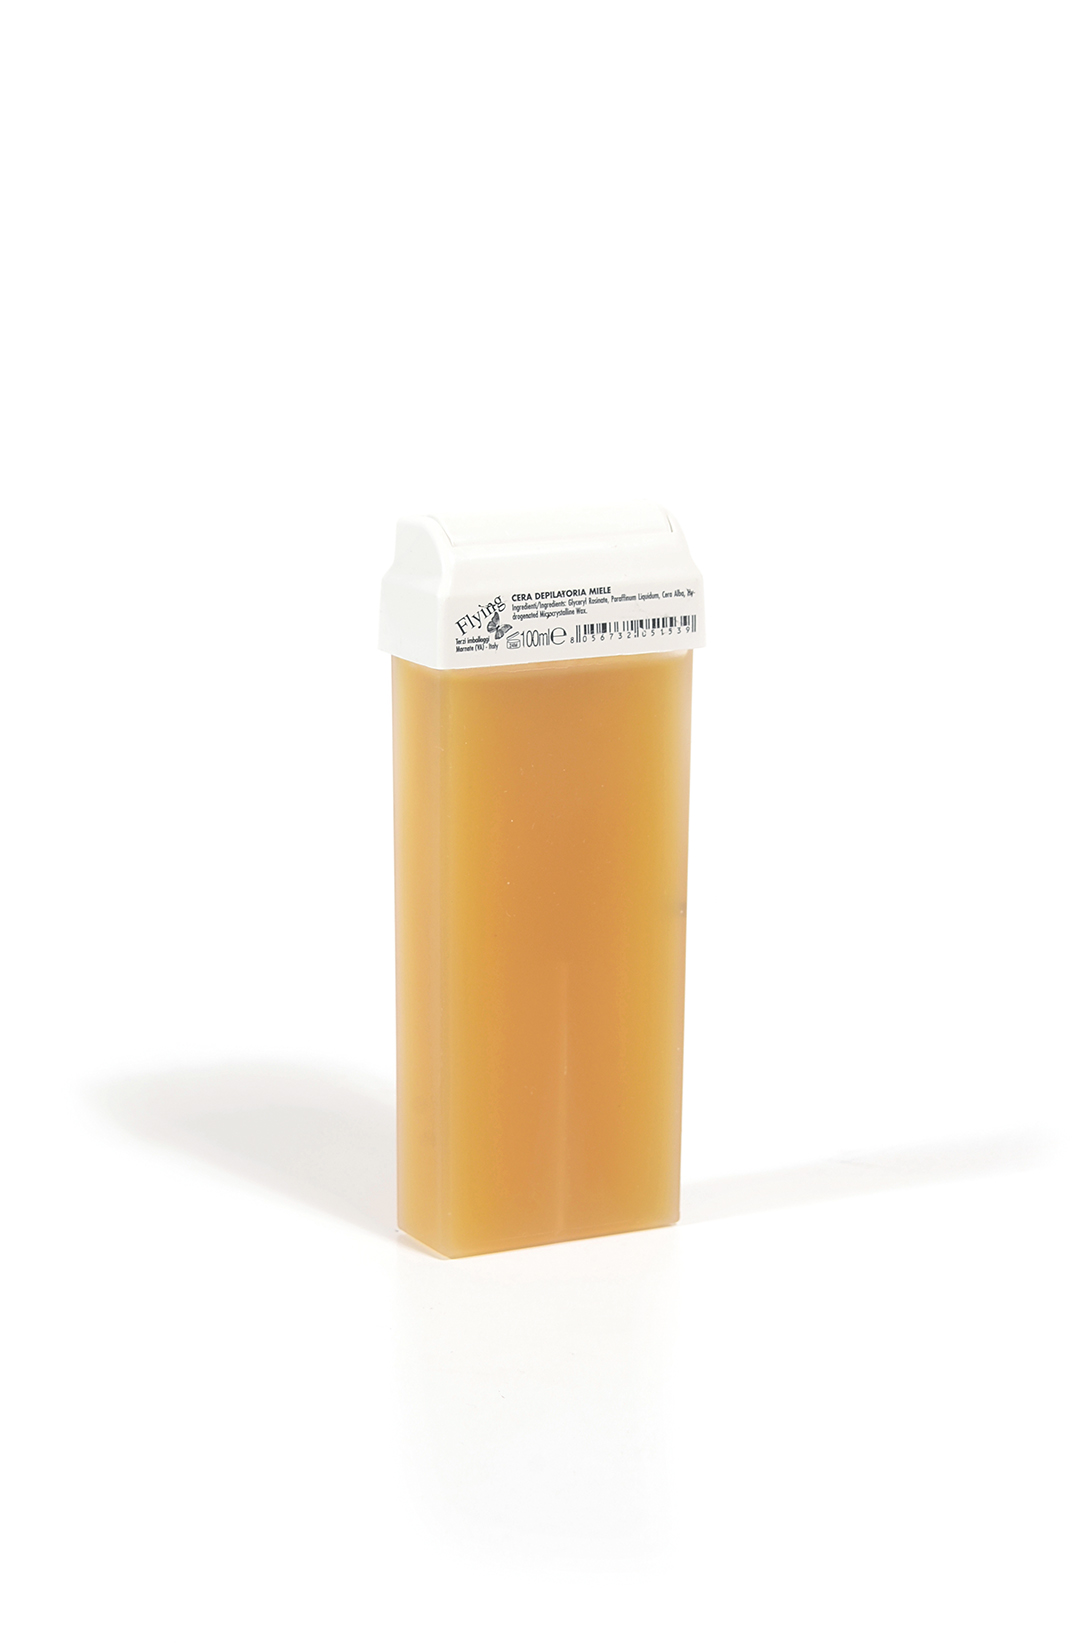 8476 - FLYING honey wax roller refill, 100 ml